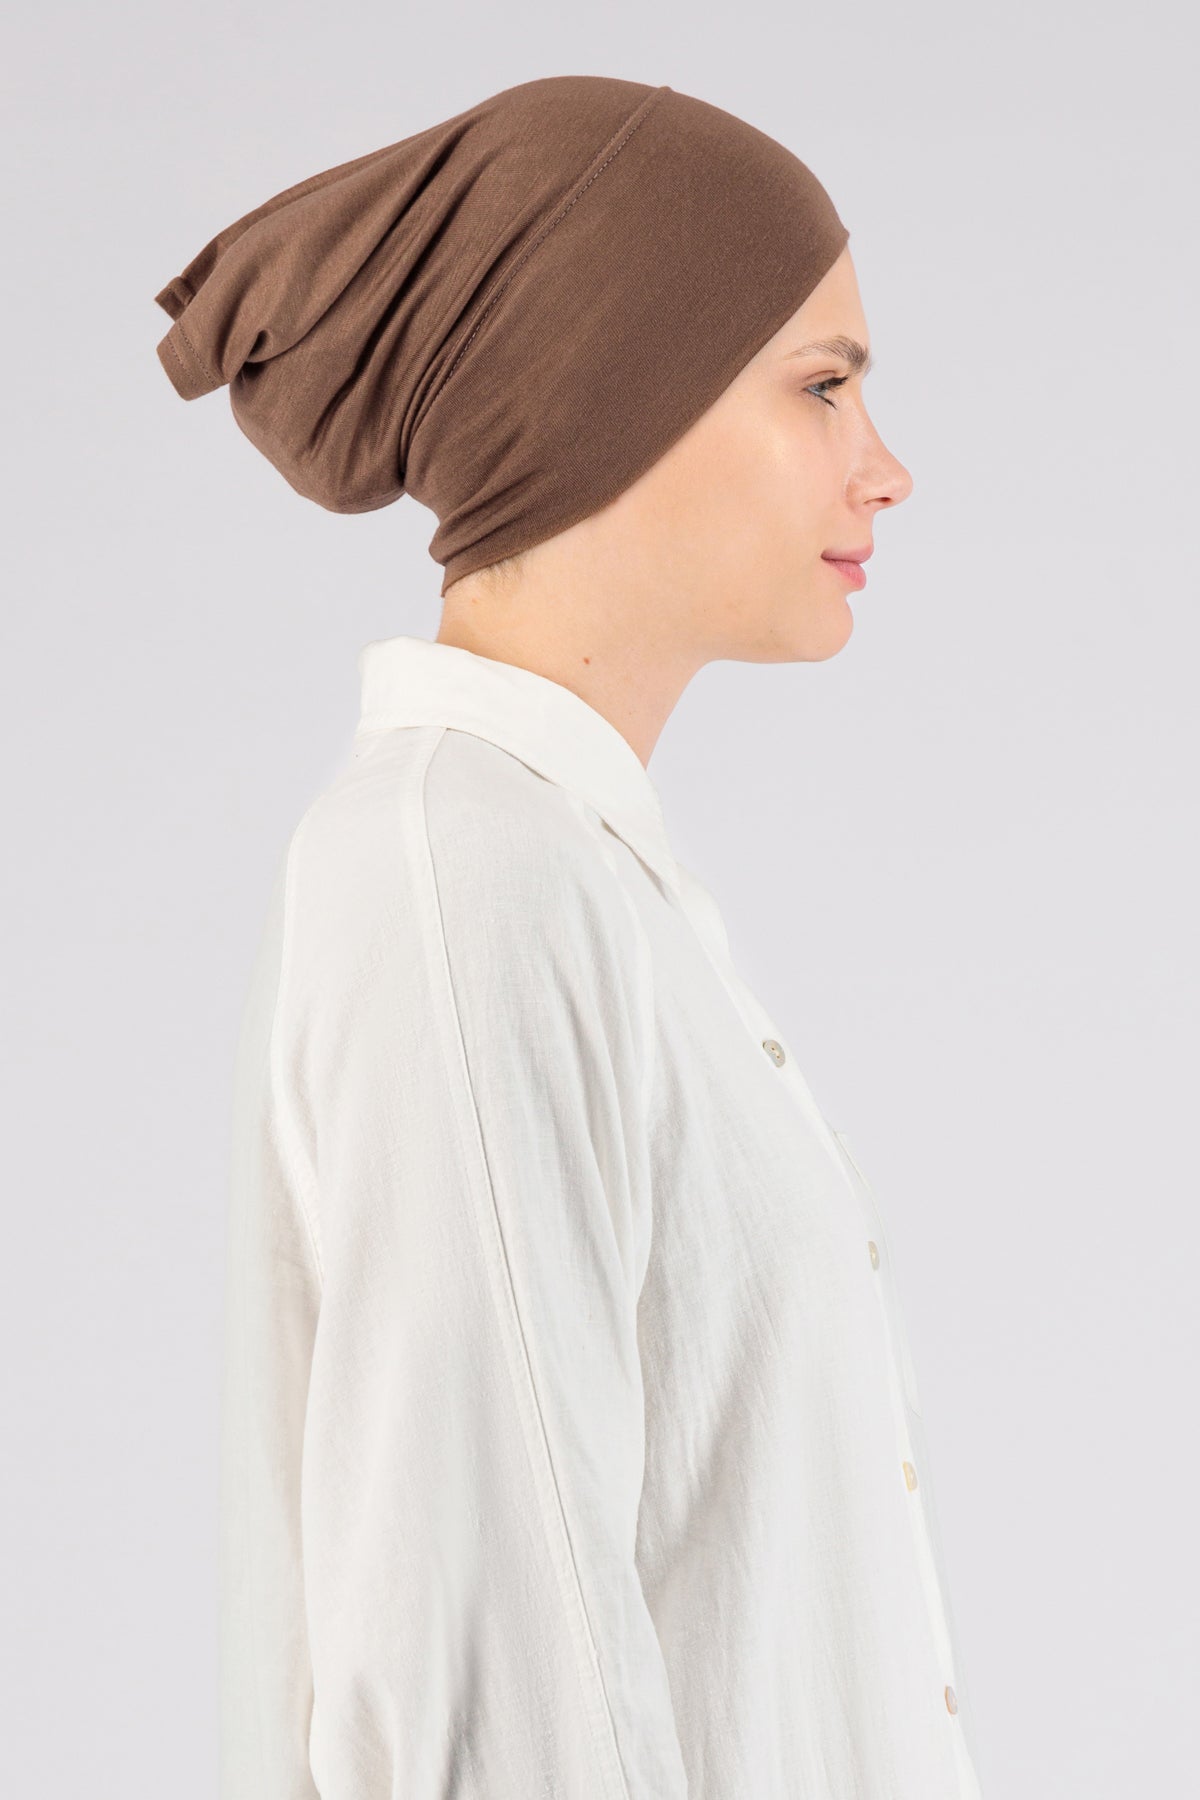 US - Matching Jersey Hijab Set - Maple